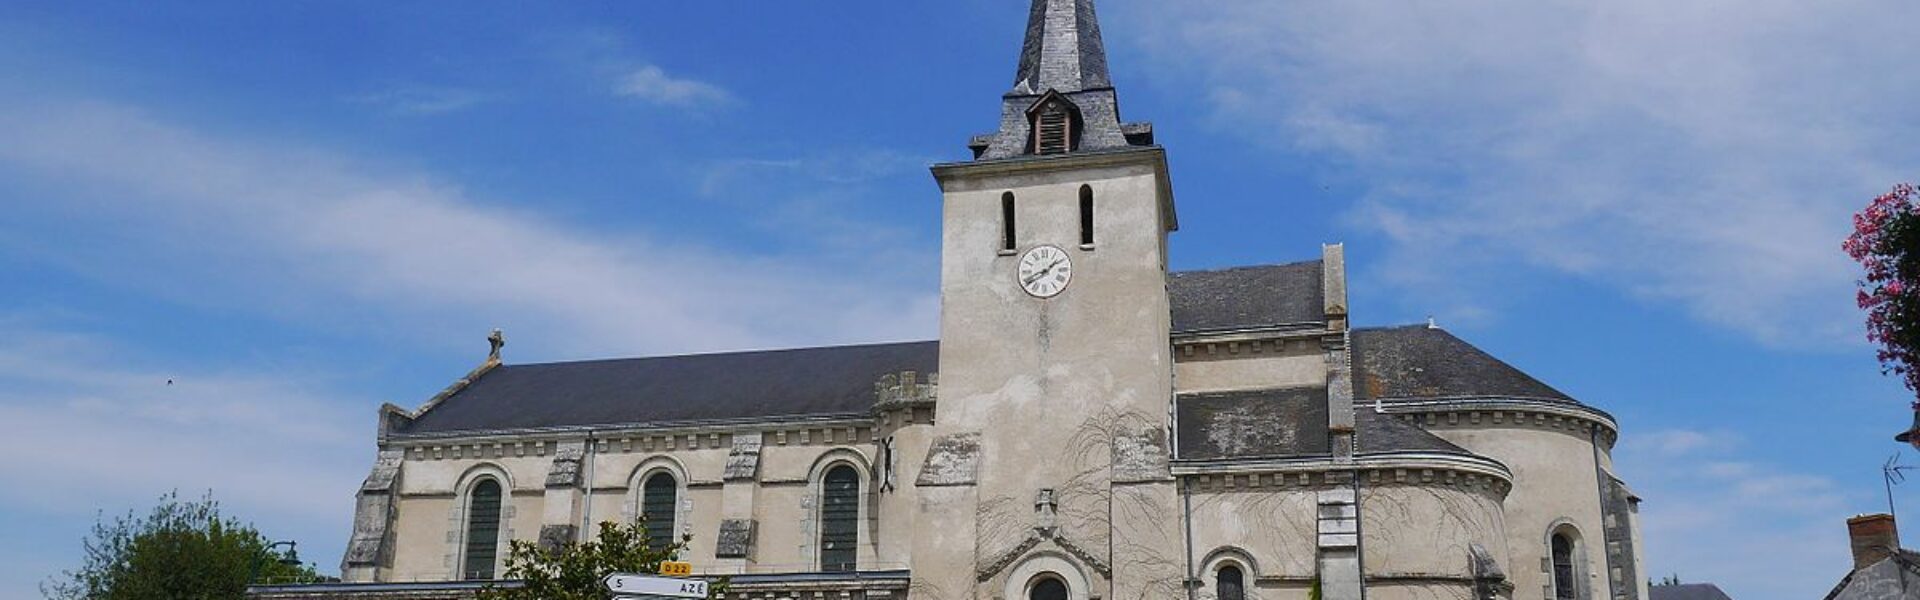 Eglise de Coudray